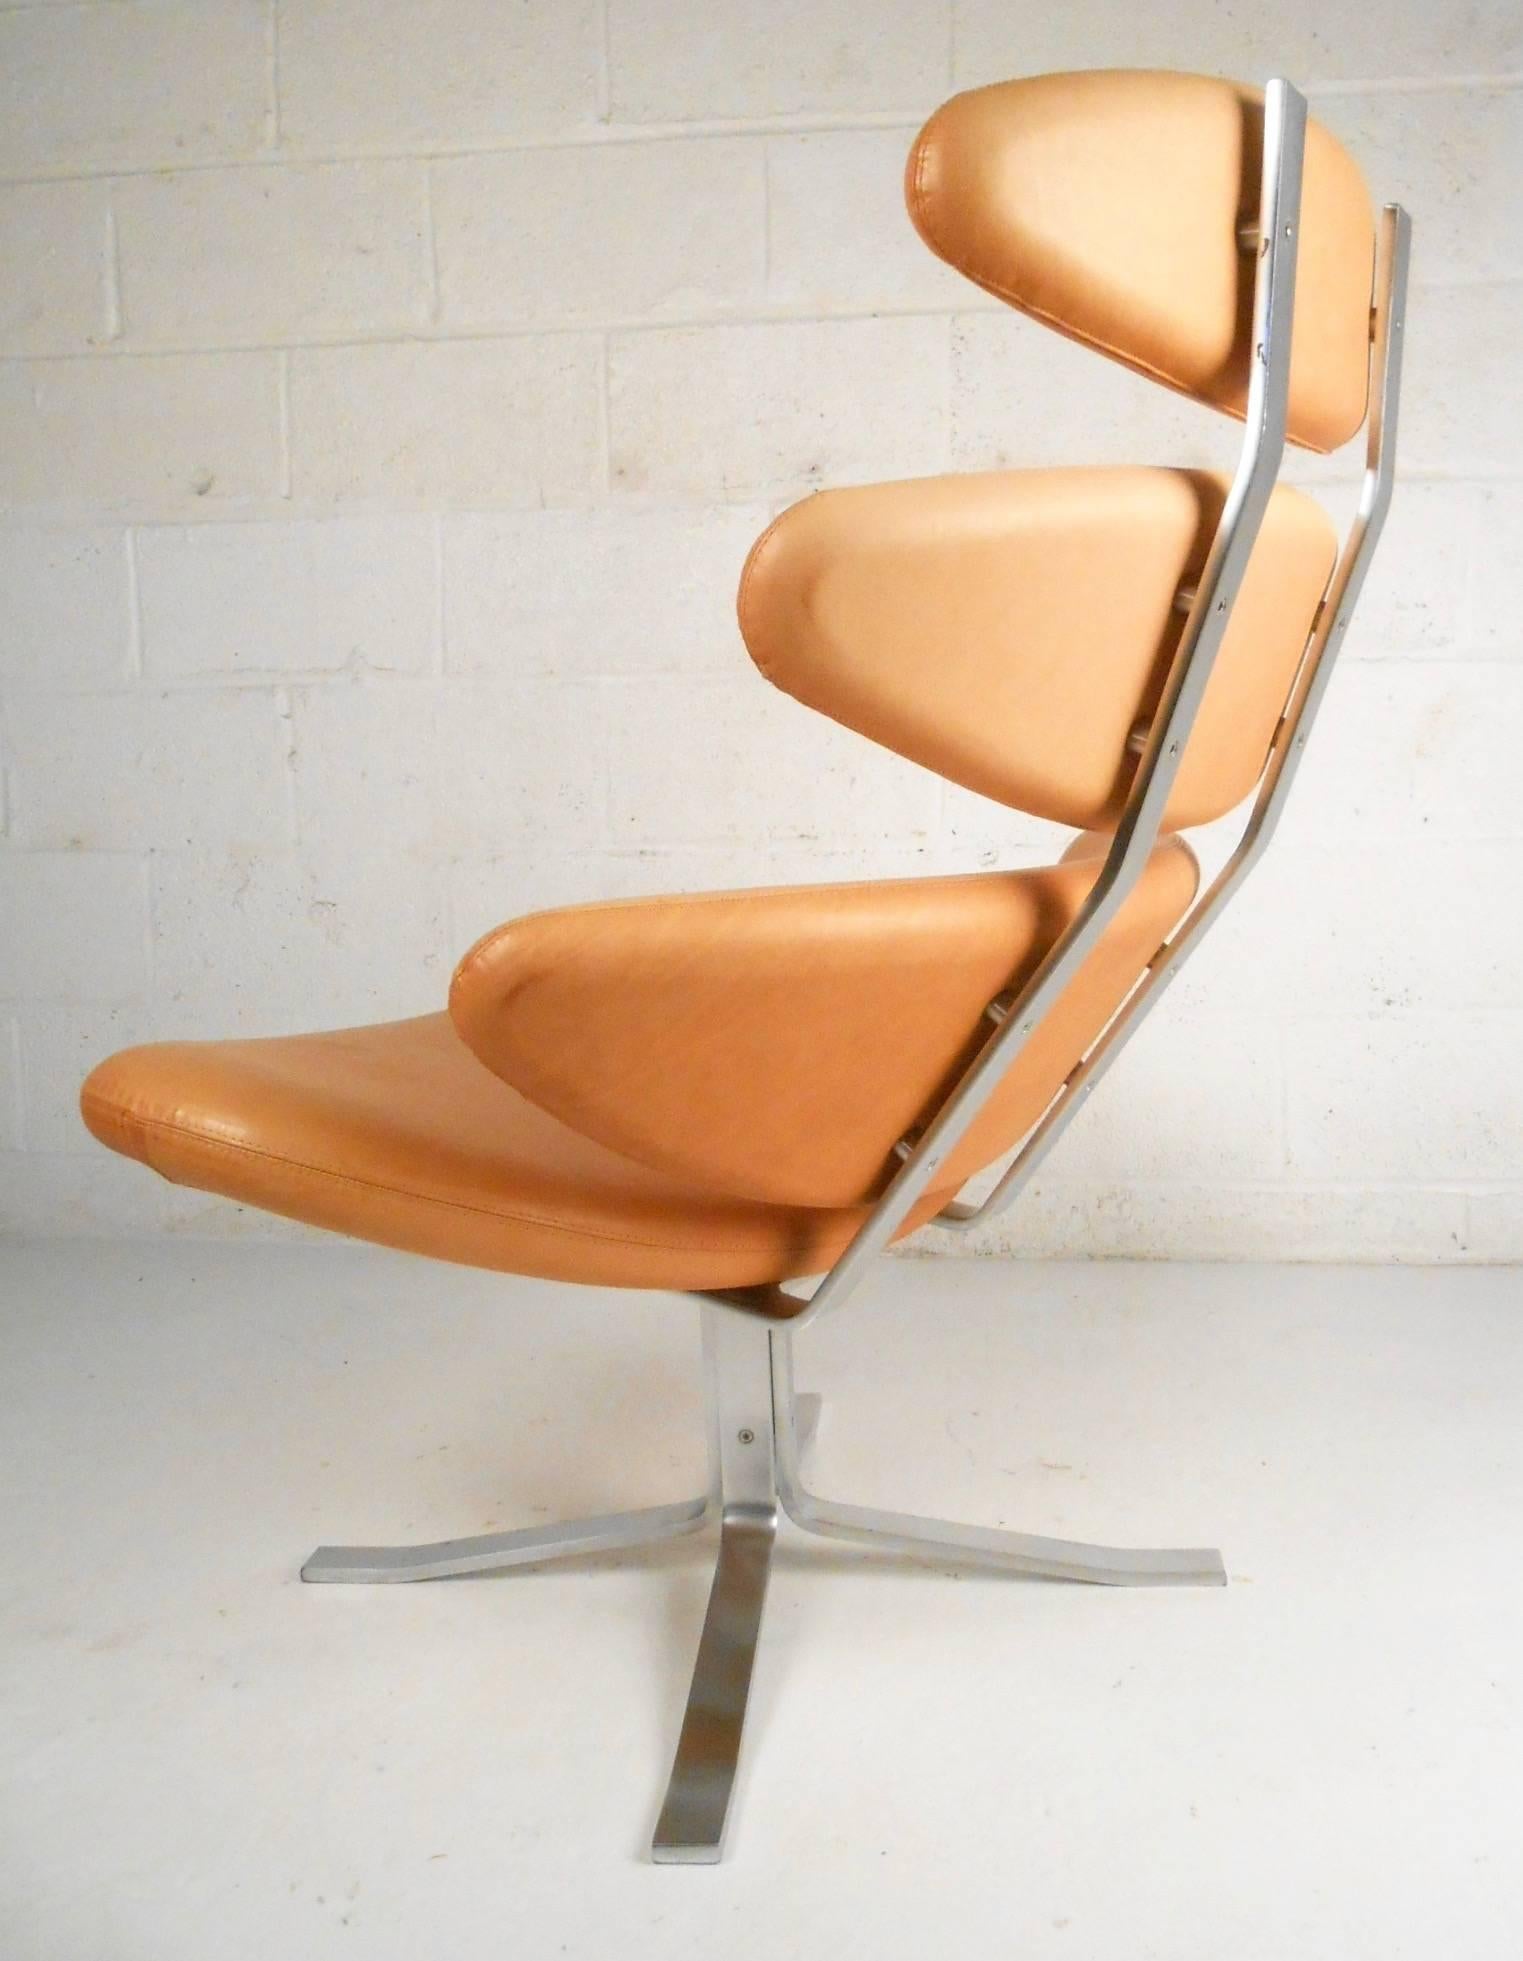 corona chair for sale